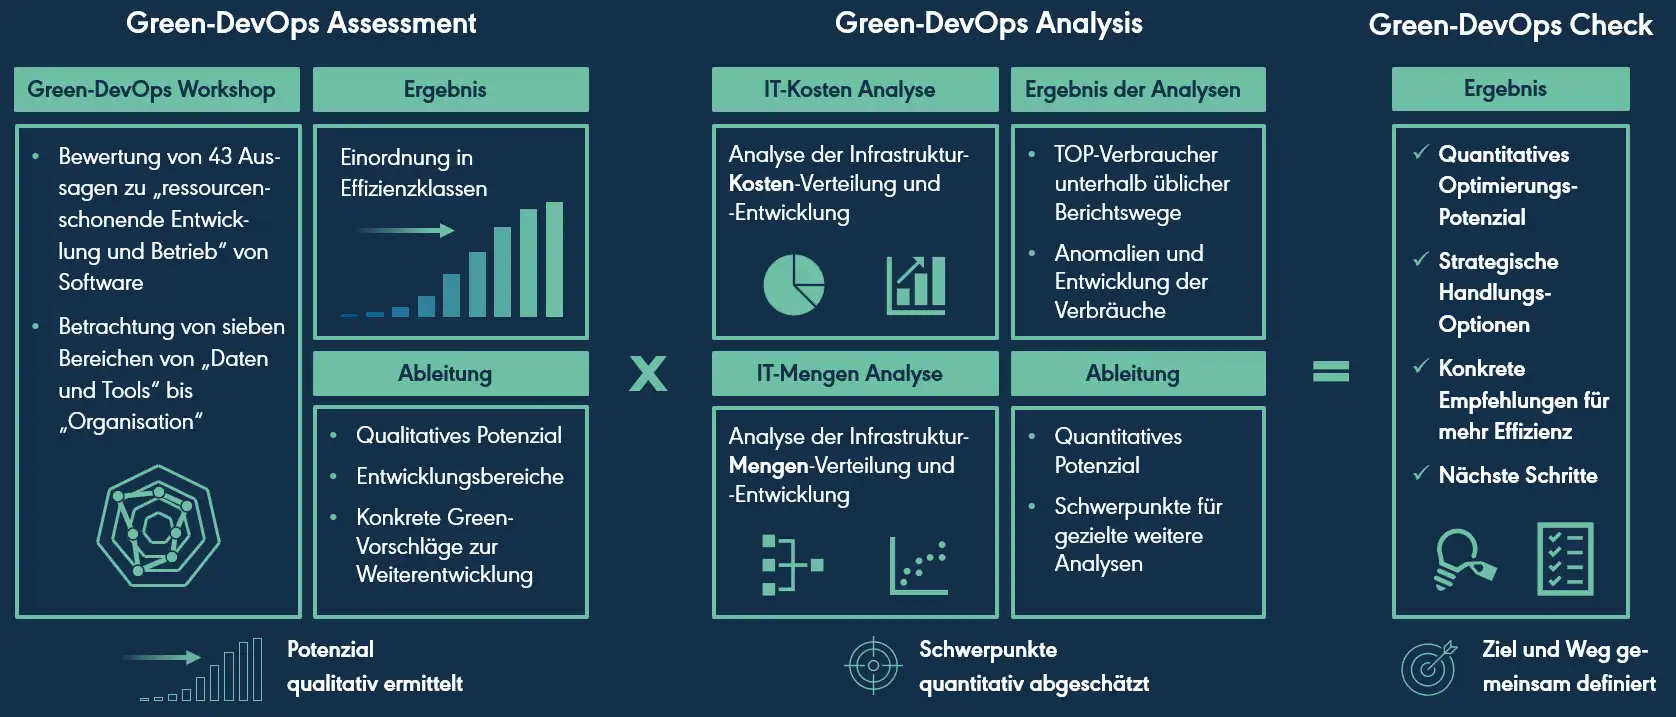 Green-DevOps-Check